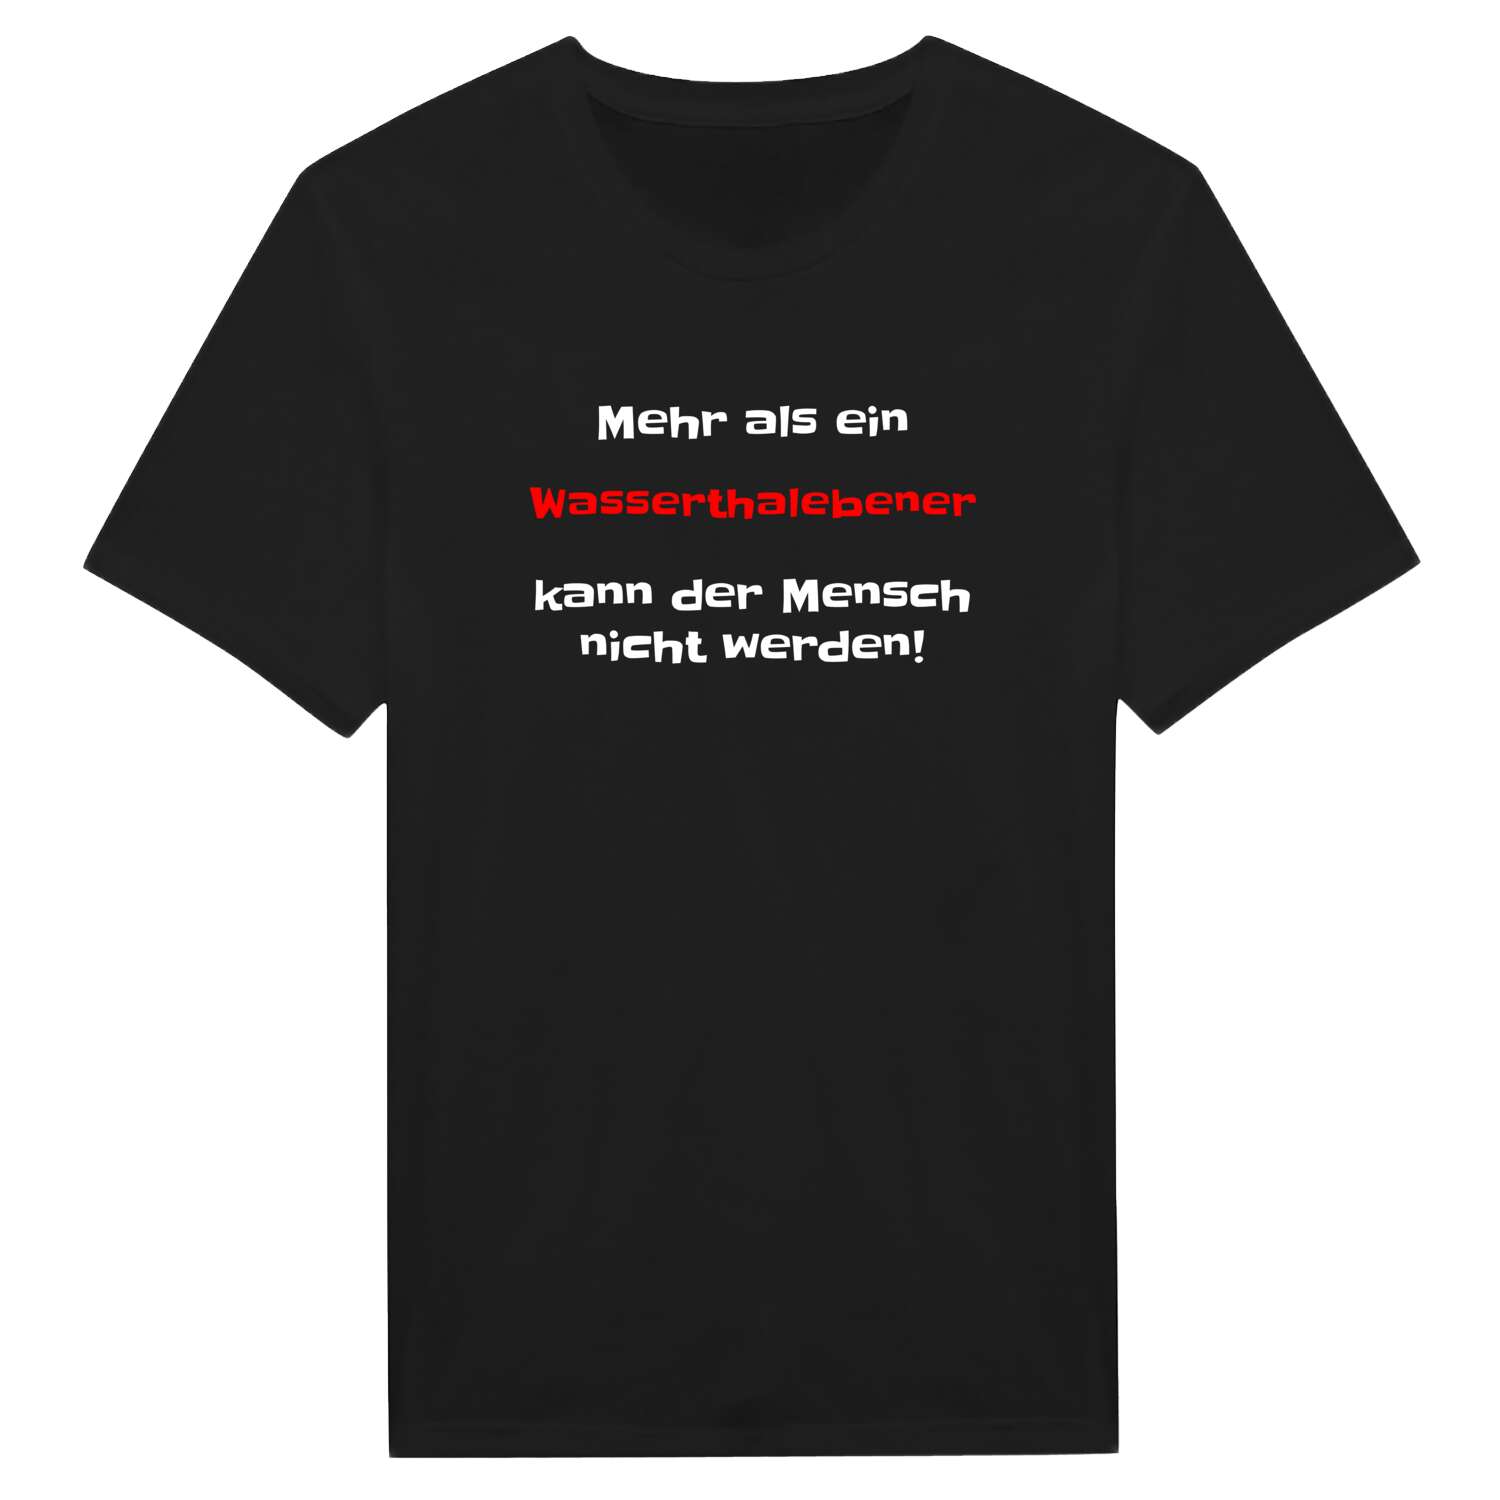 Wasserthaleben T-Shirt »Mehr als ein«